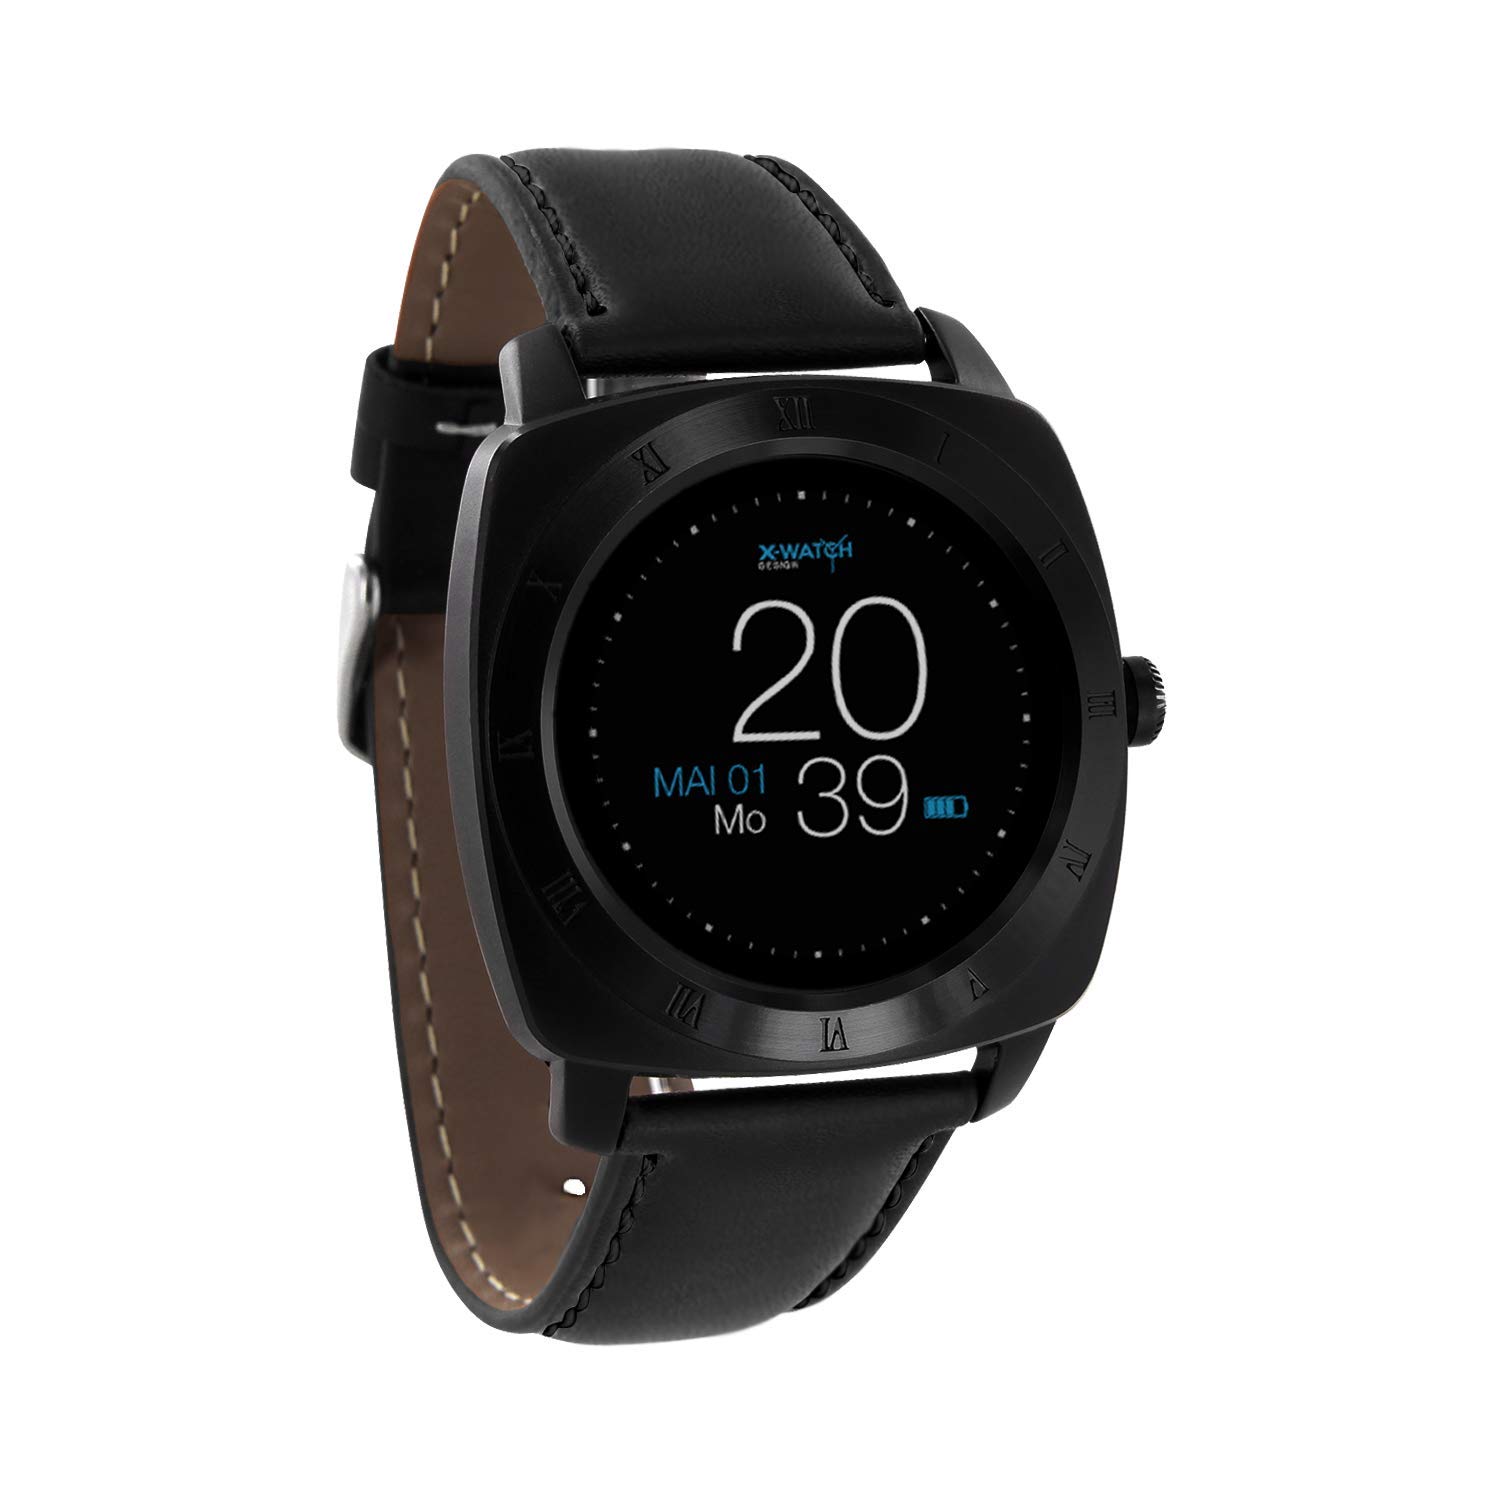 X-WATCH 54006 Smartwatch NARA XW PRO BLACK CHROME Herren Smartwatch